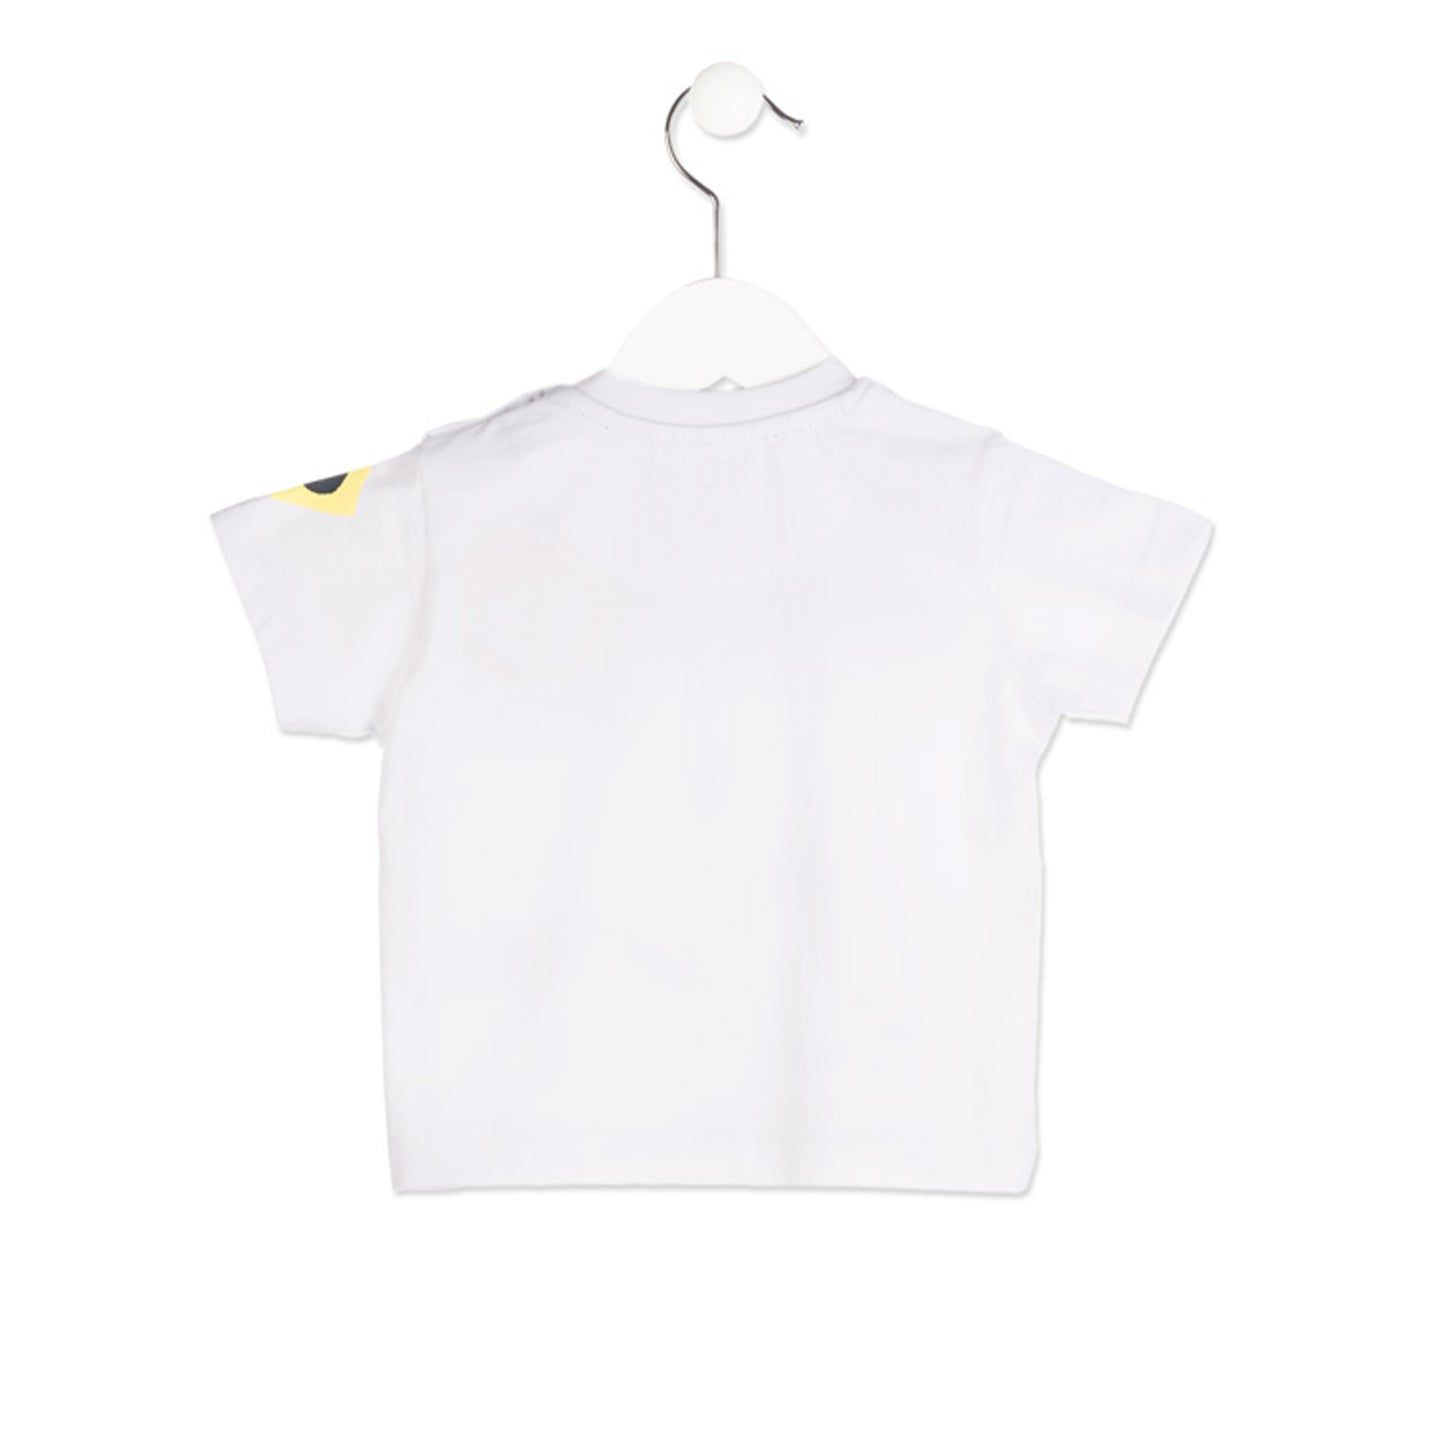 Losan - Baby Boy Sailor Details T-Shirt